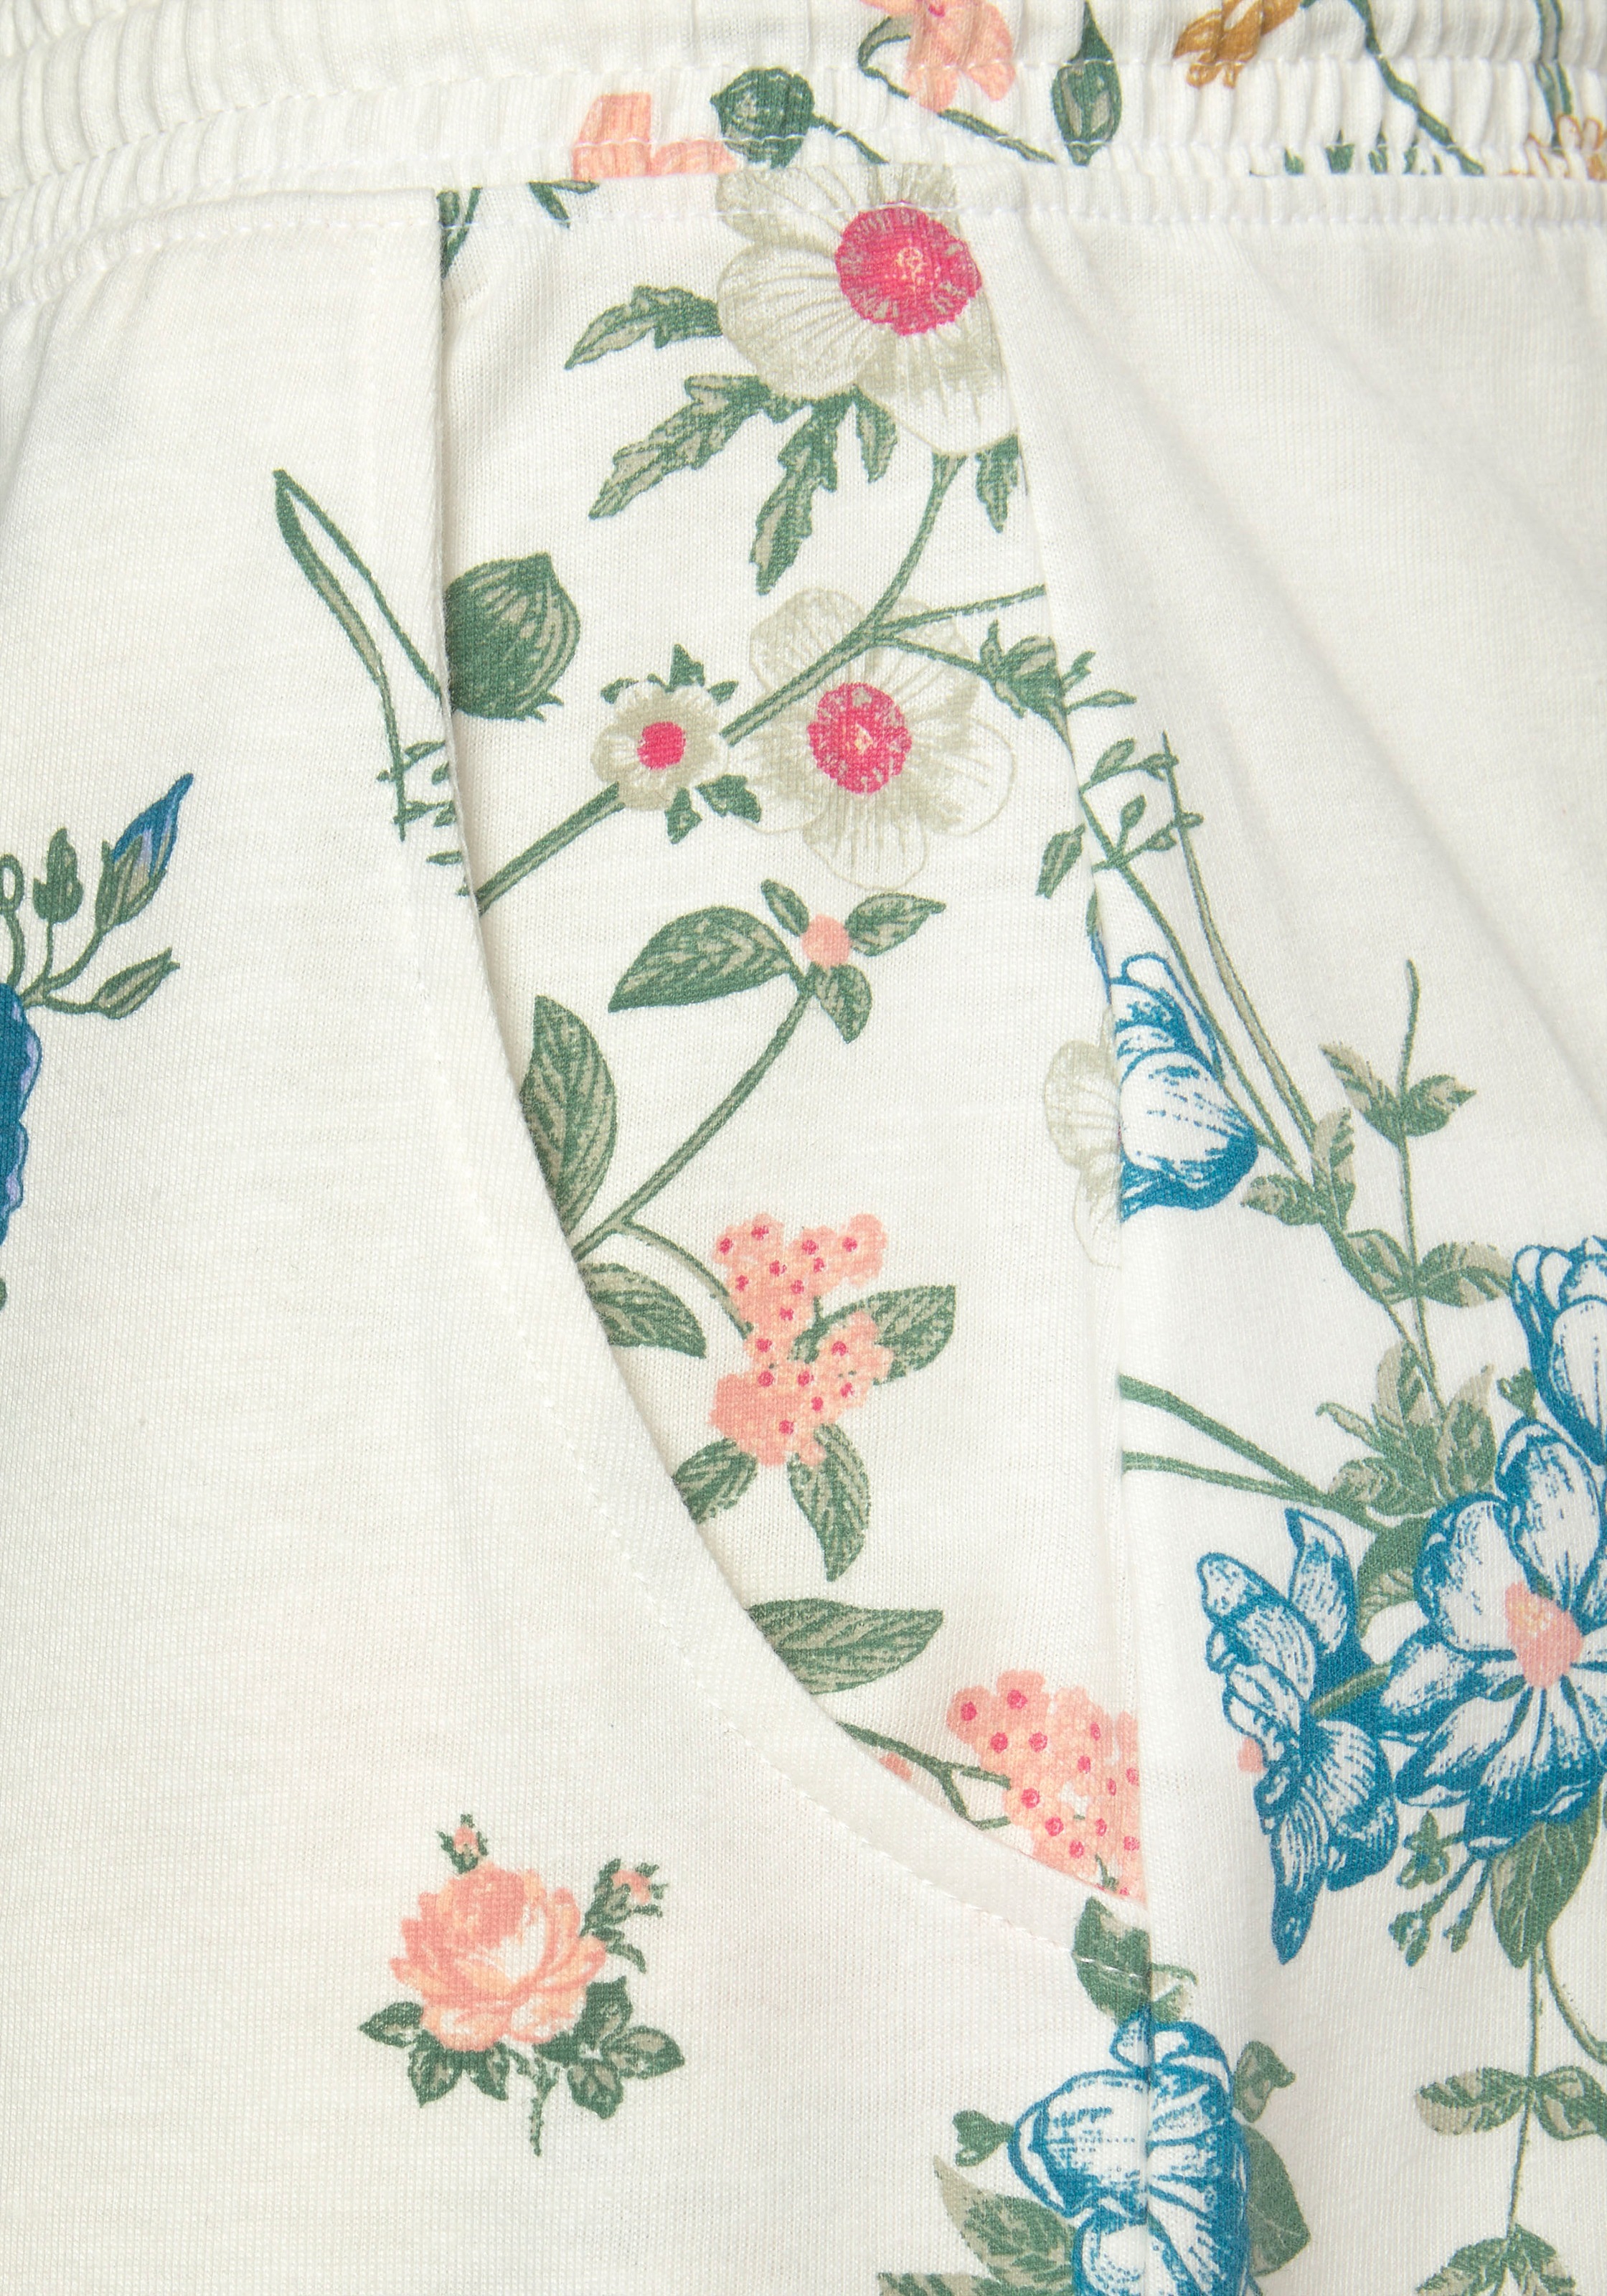 Vivance Dreams Pyjama, (2 tlg., 1 Stück), mit Blumen Print » LASCANA |  Bademode, Unterwäsche & Lingerie online kaufen